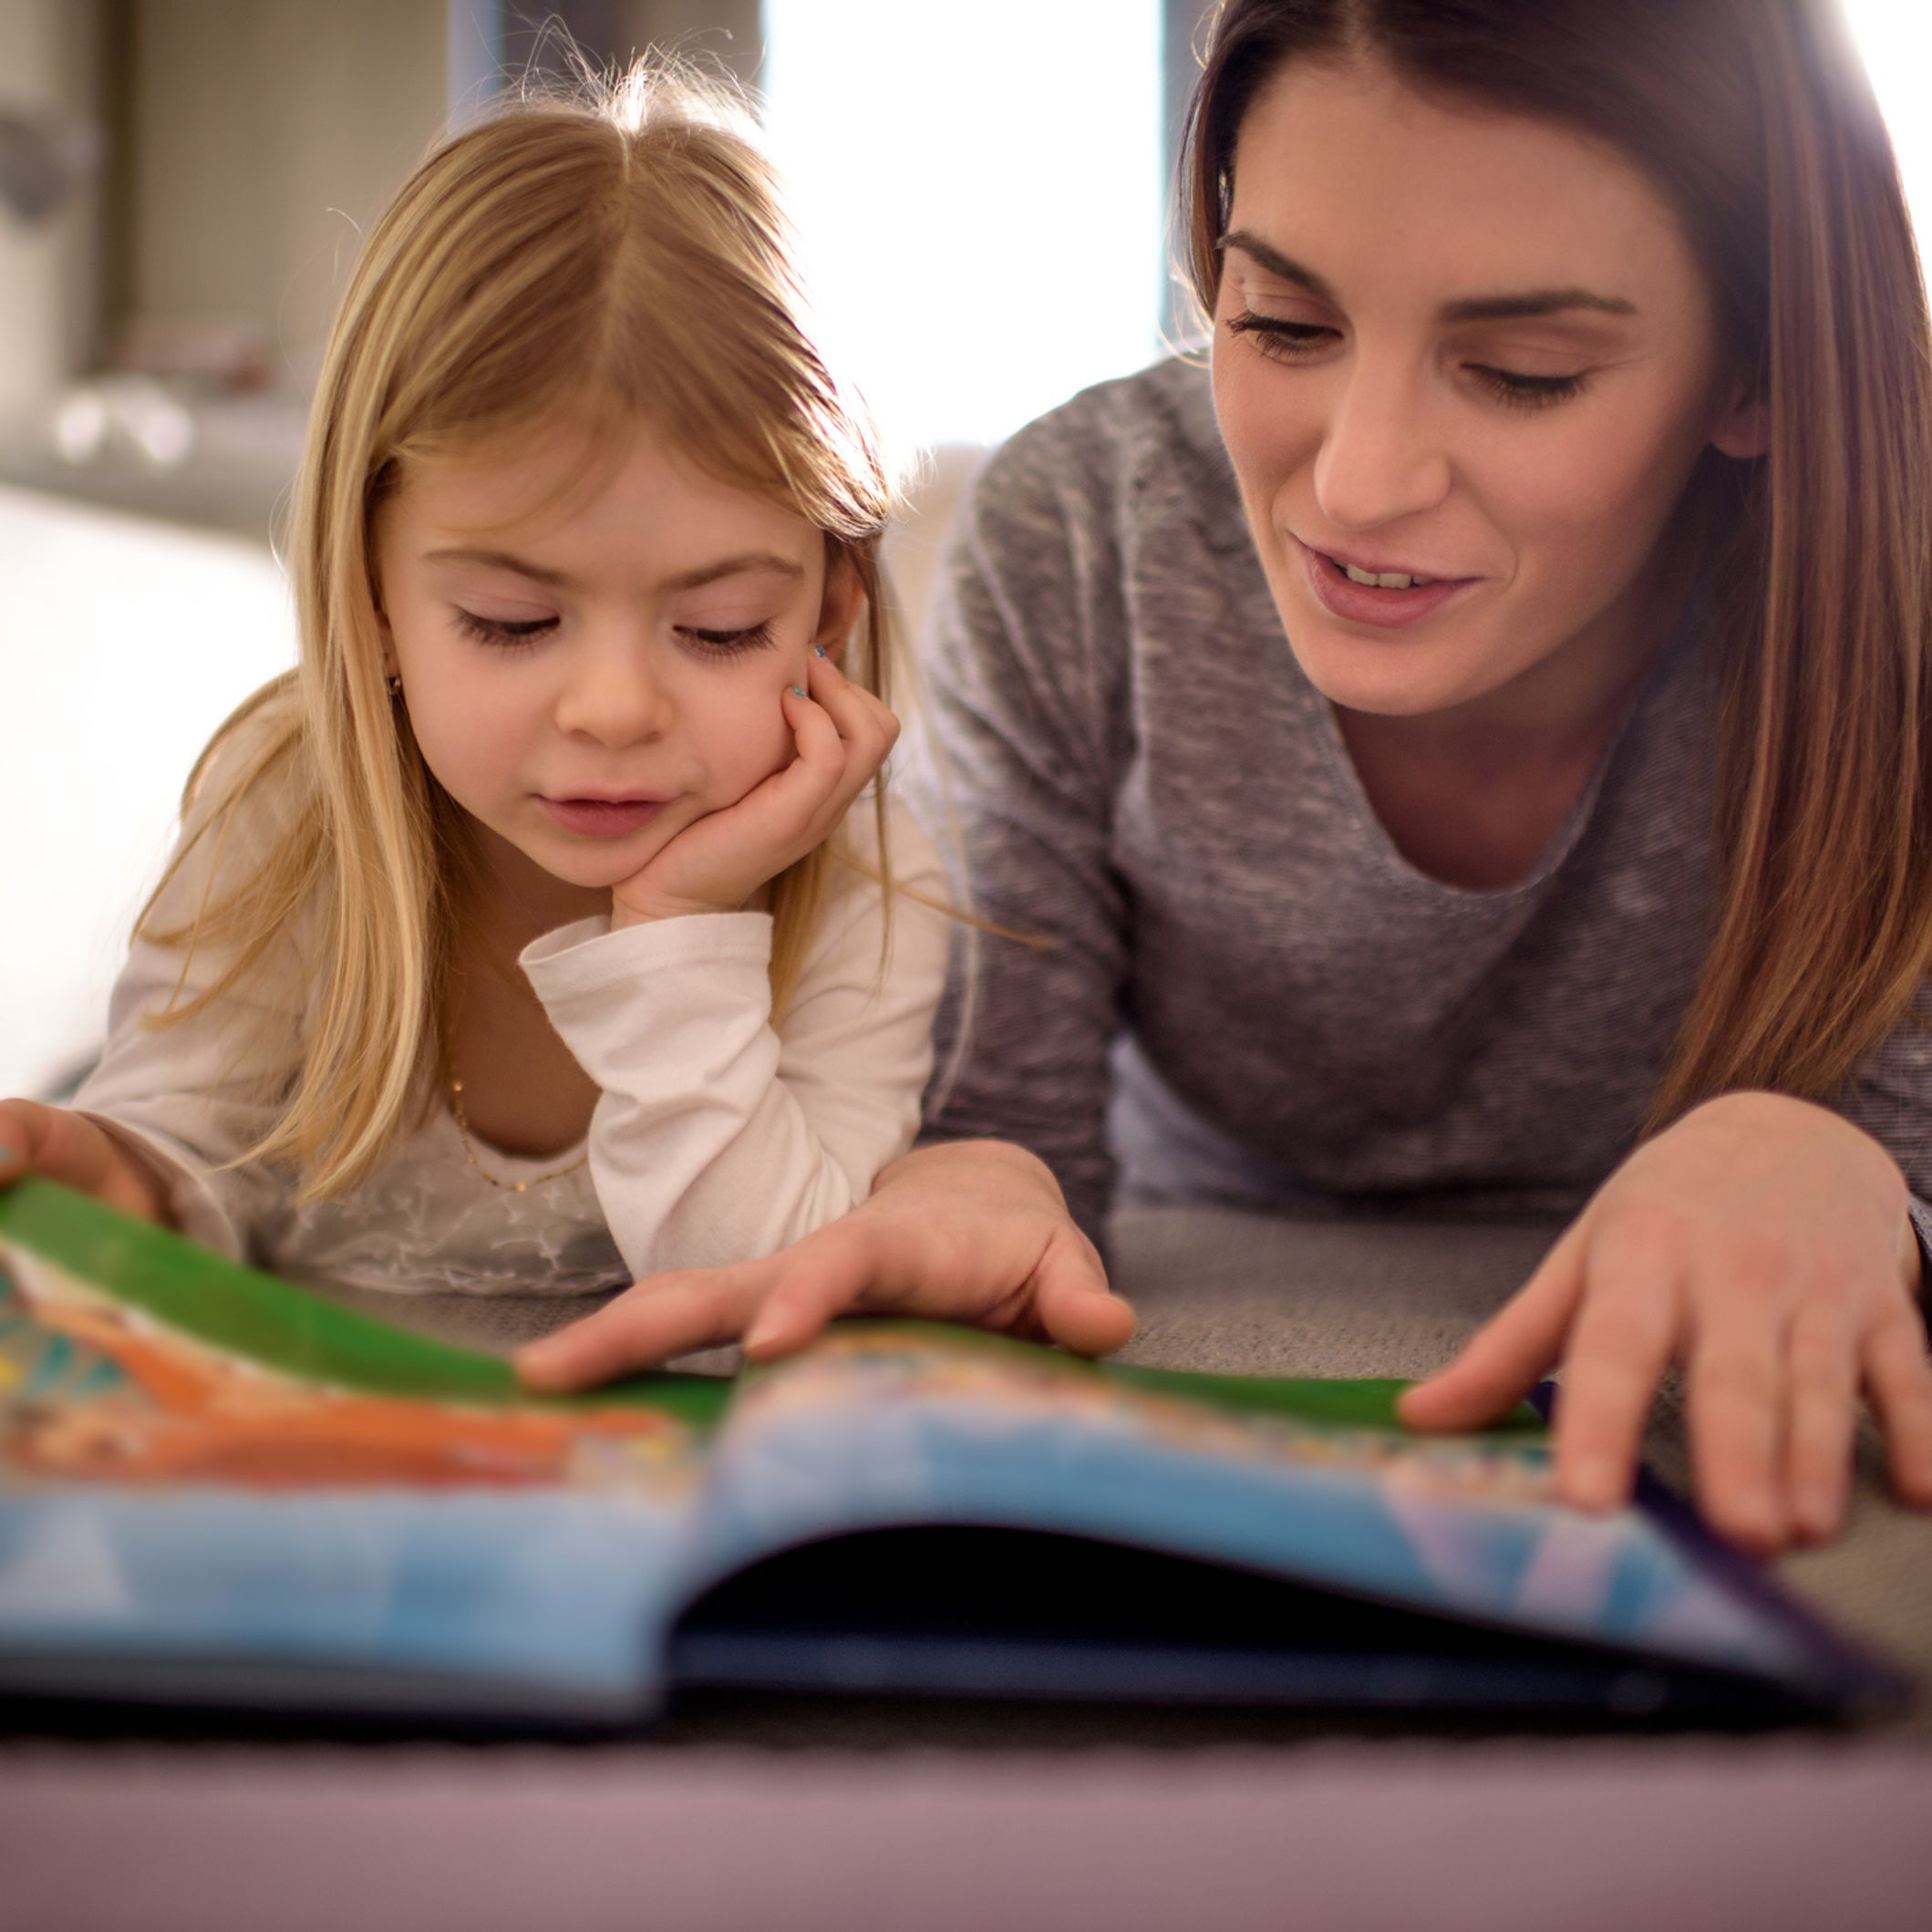 Livres pour apprendre a lire - Les activités de maman